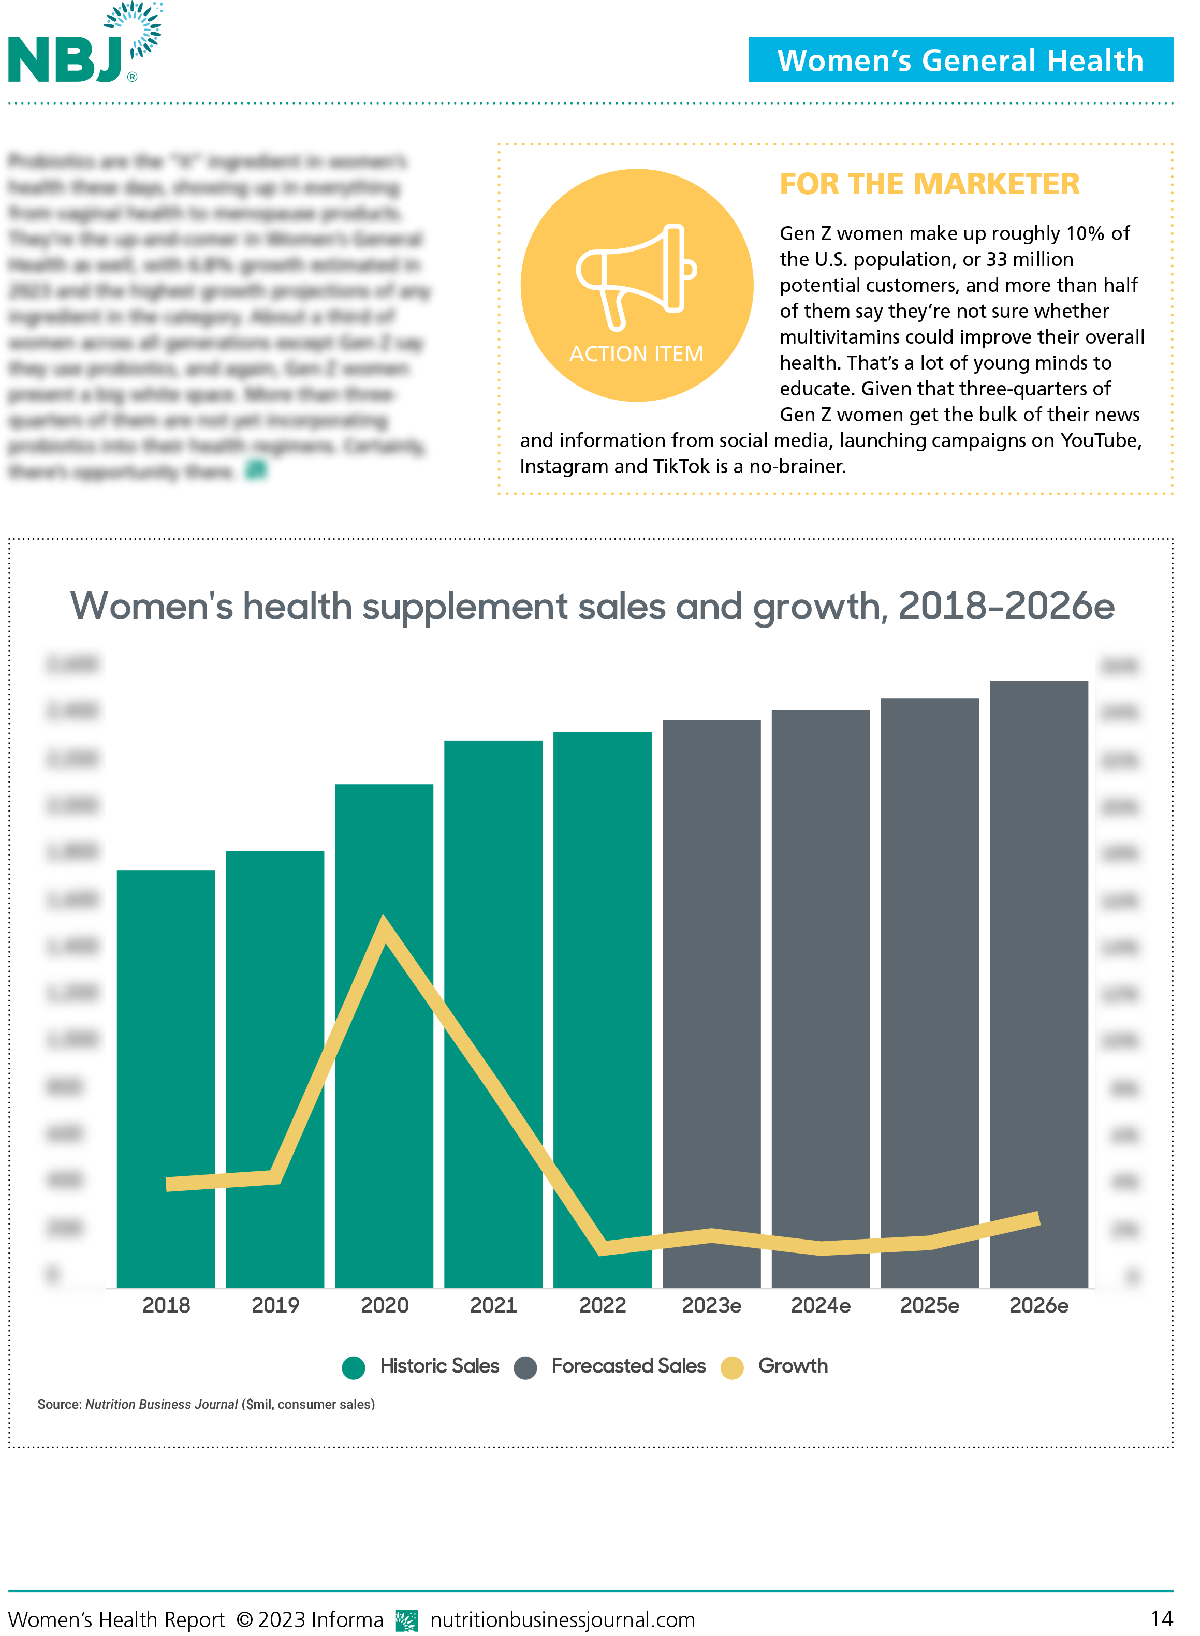 Women's Health Report